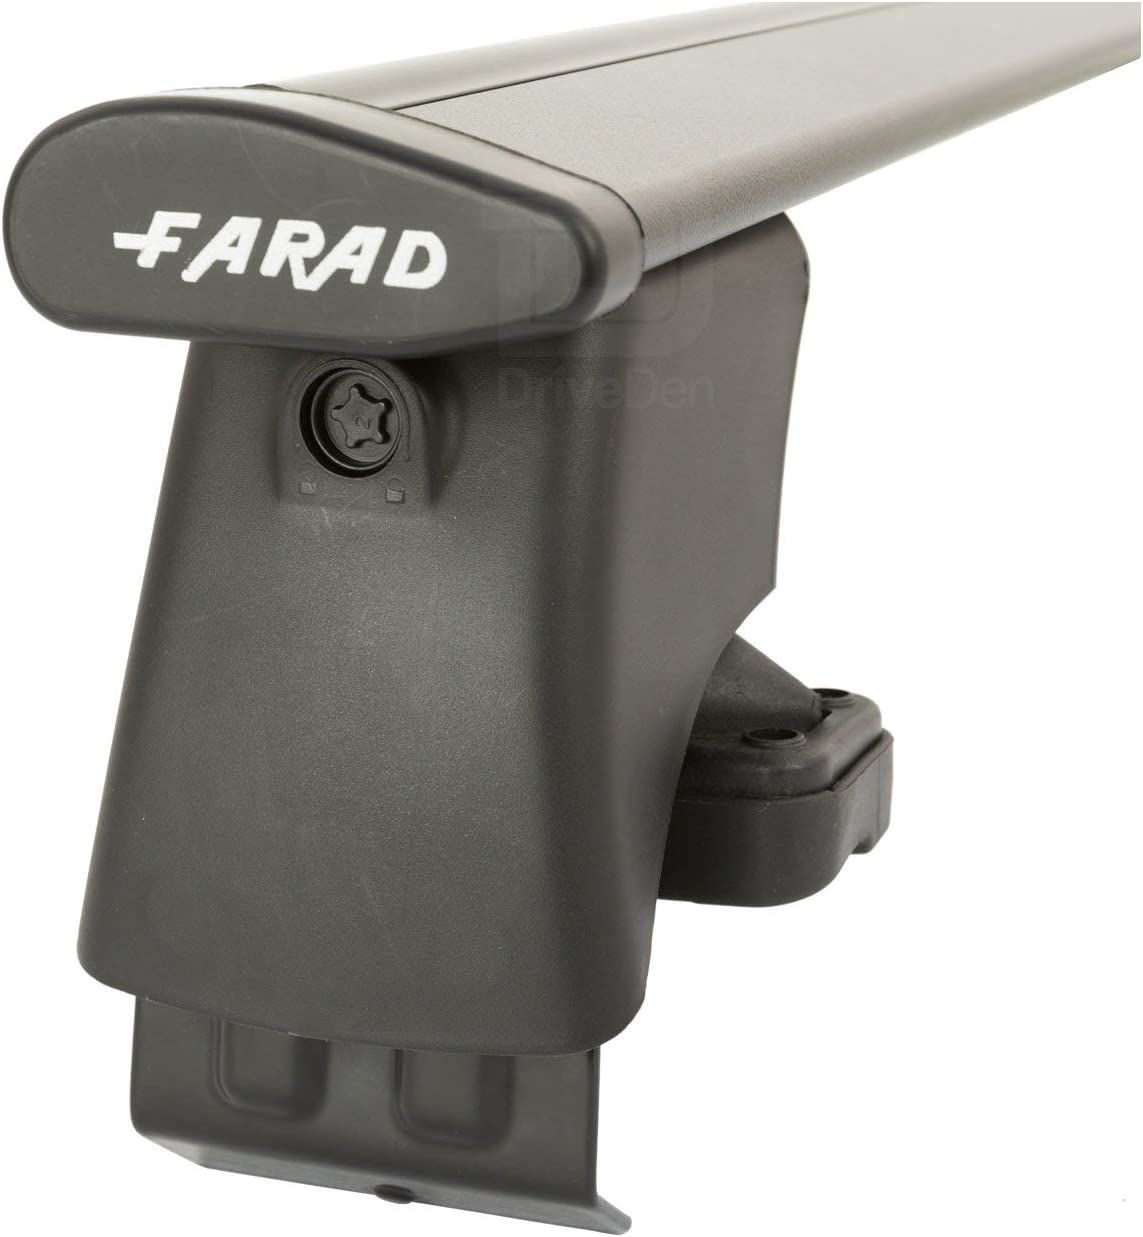 FARAD-Kit H2 per barre portatutto - Chevrolet Cruze Berlina 2009-2015 (senza corrimano)